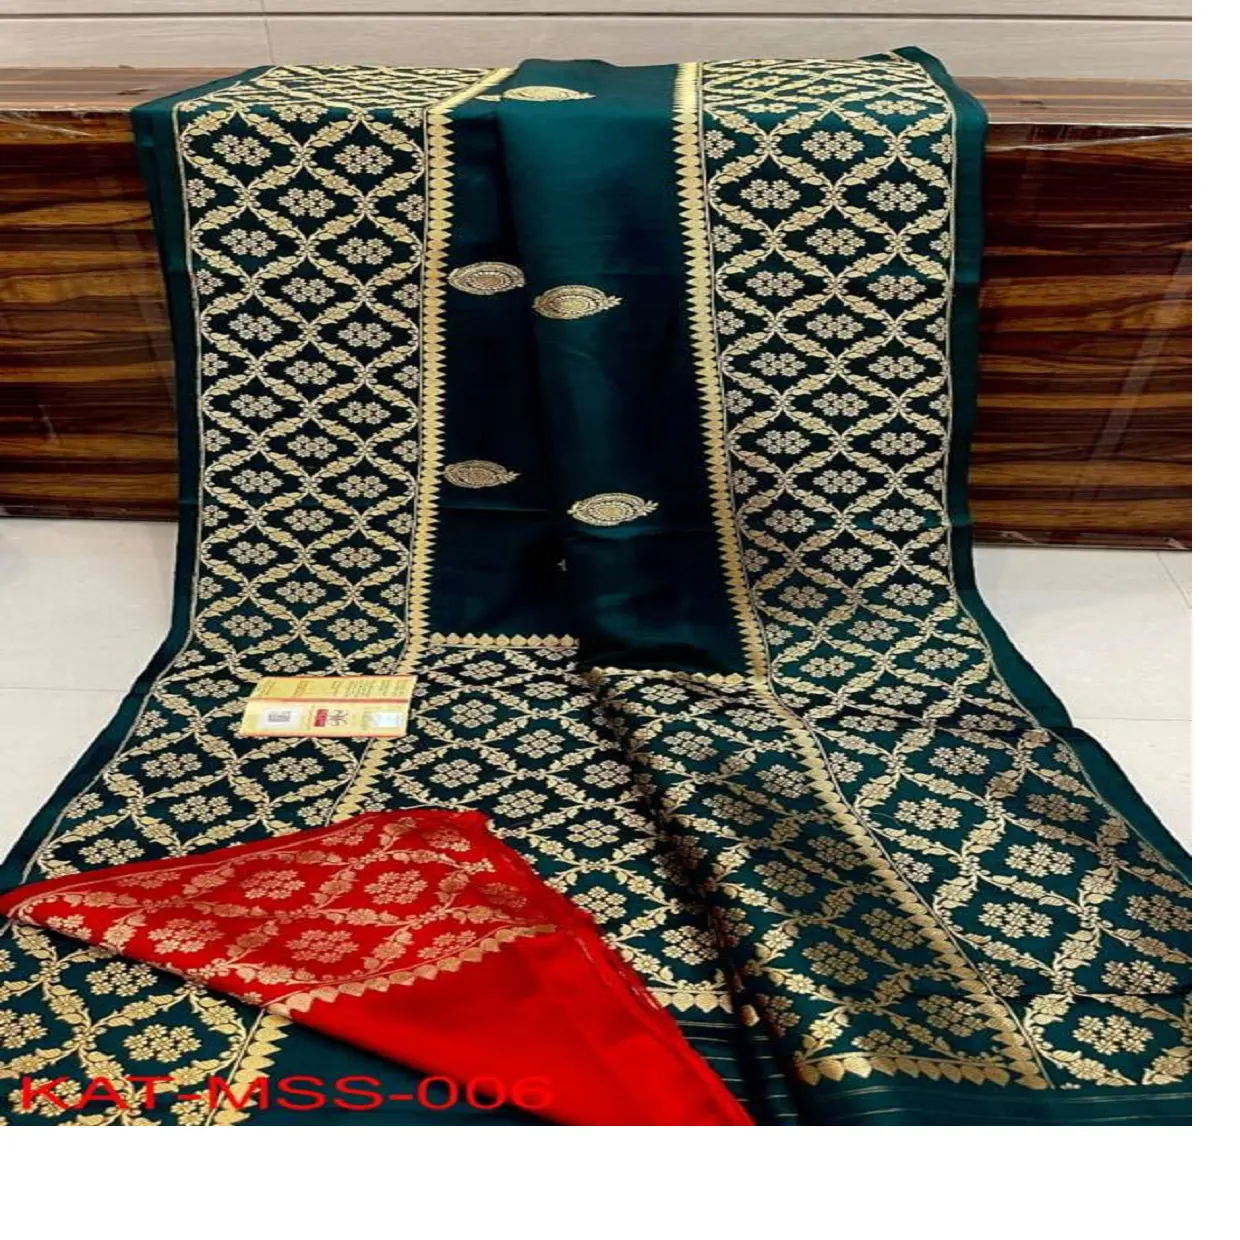 Custom made brocado seda sarees disponíveis na cor preta com boa impressão ideal para revenda por lojas de tecido